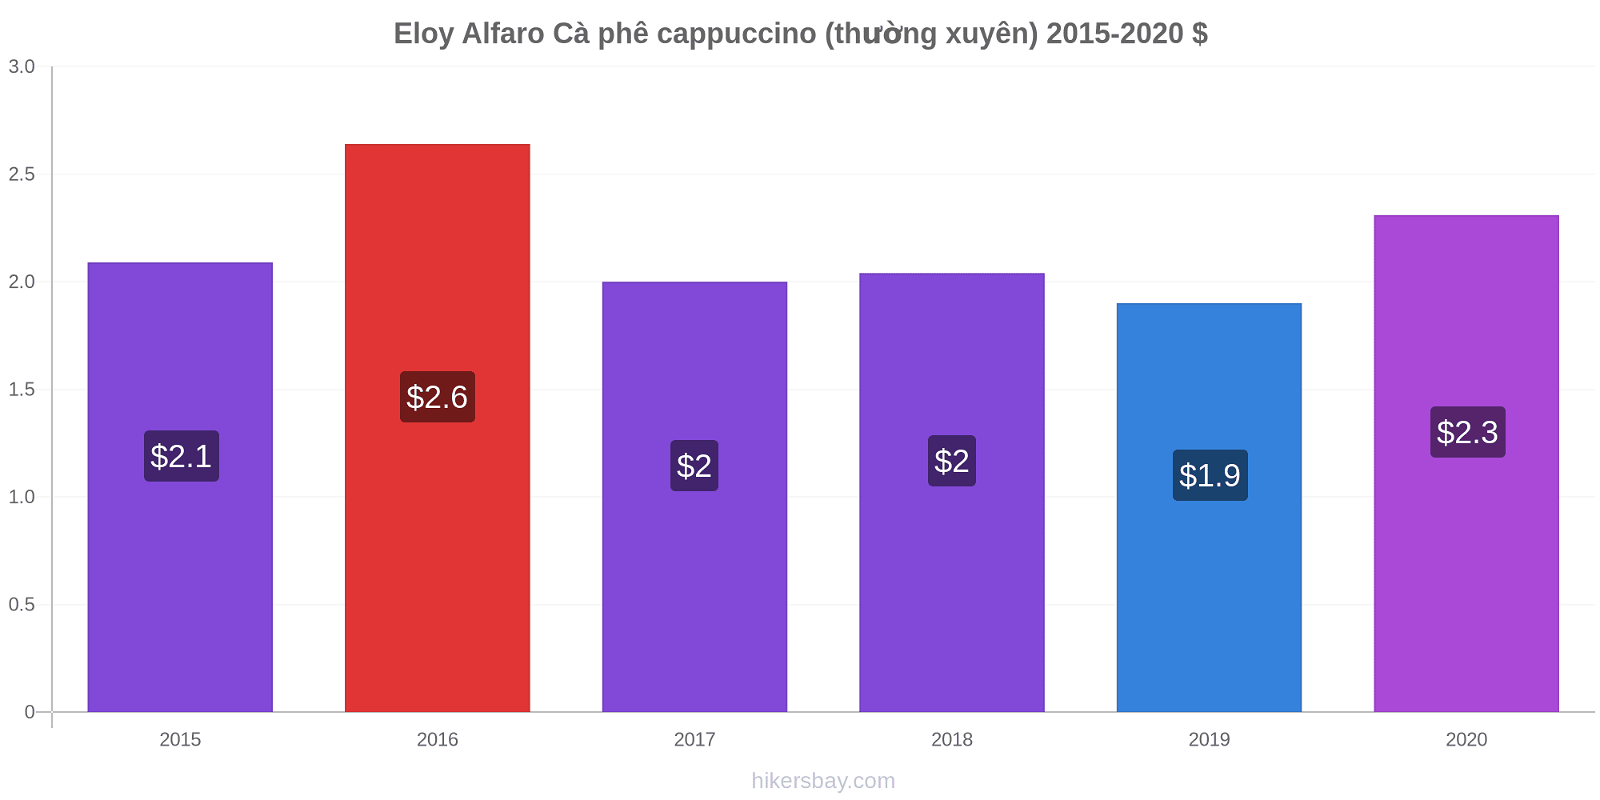 Eloy Alfaro thay đổi giá Cà phê cappuccino (thường xuyên) hikersbay.com